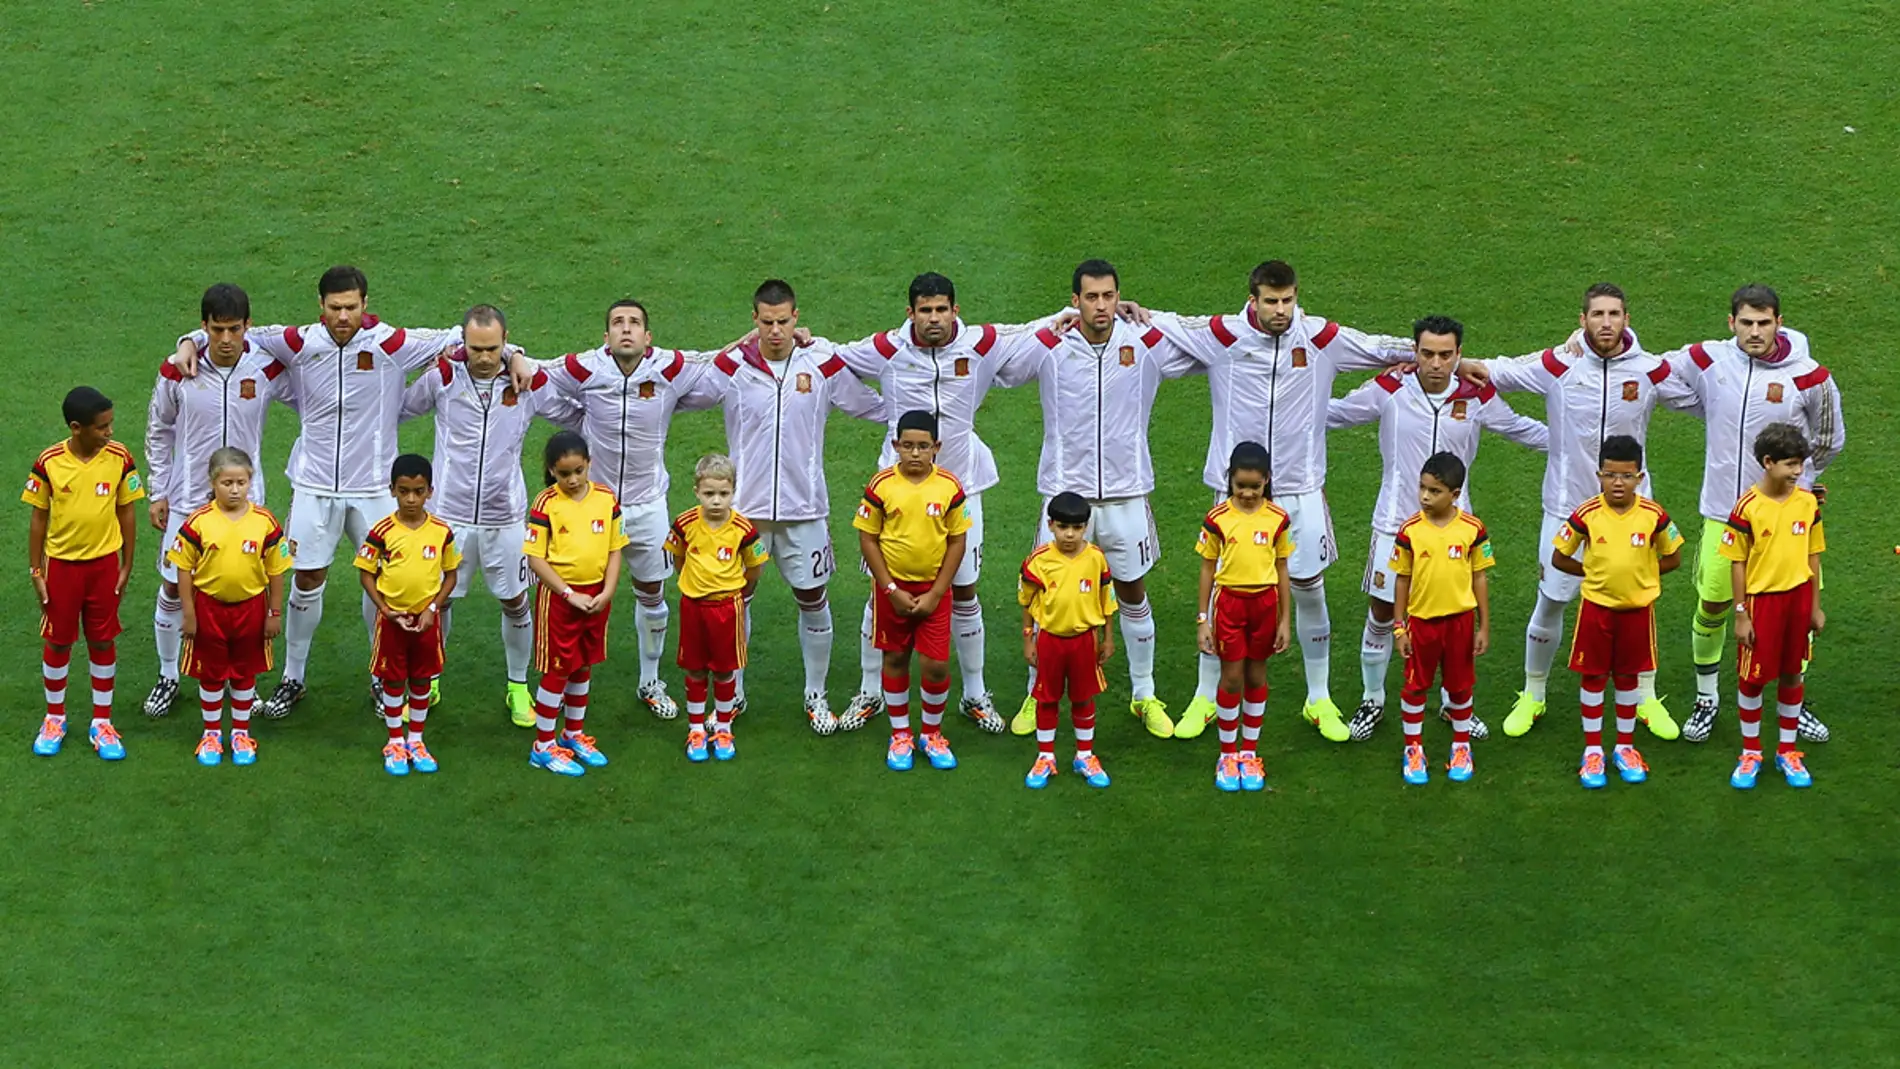 La selección española, durante el himno